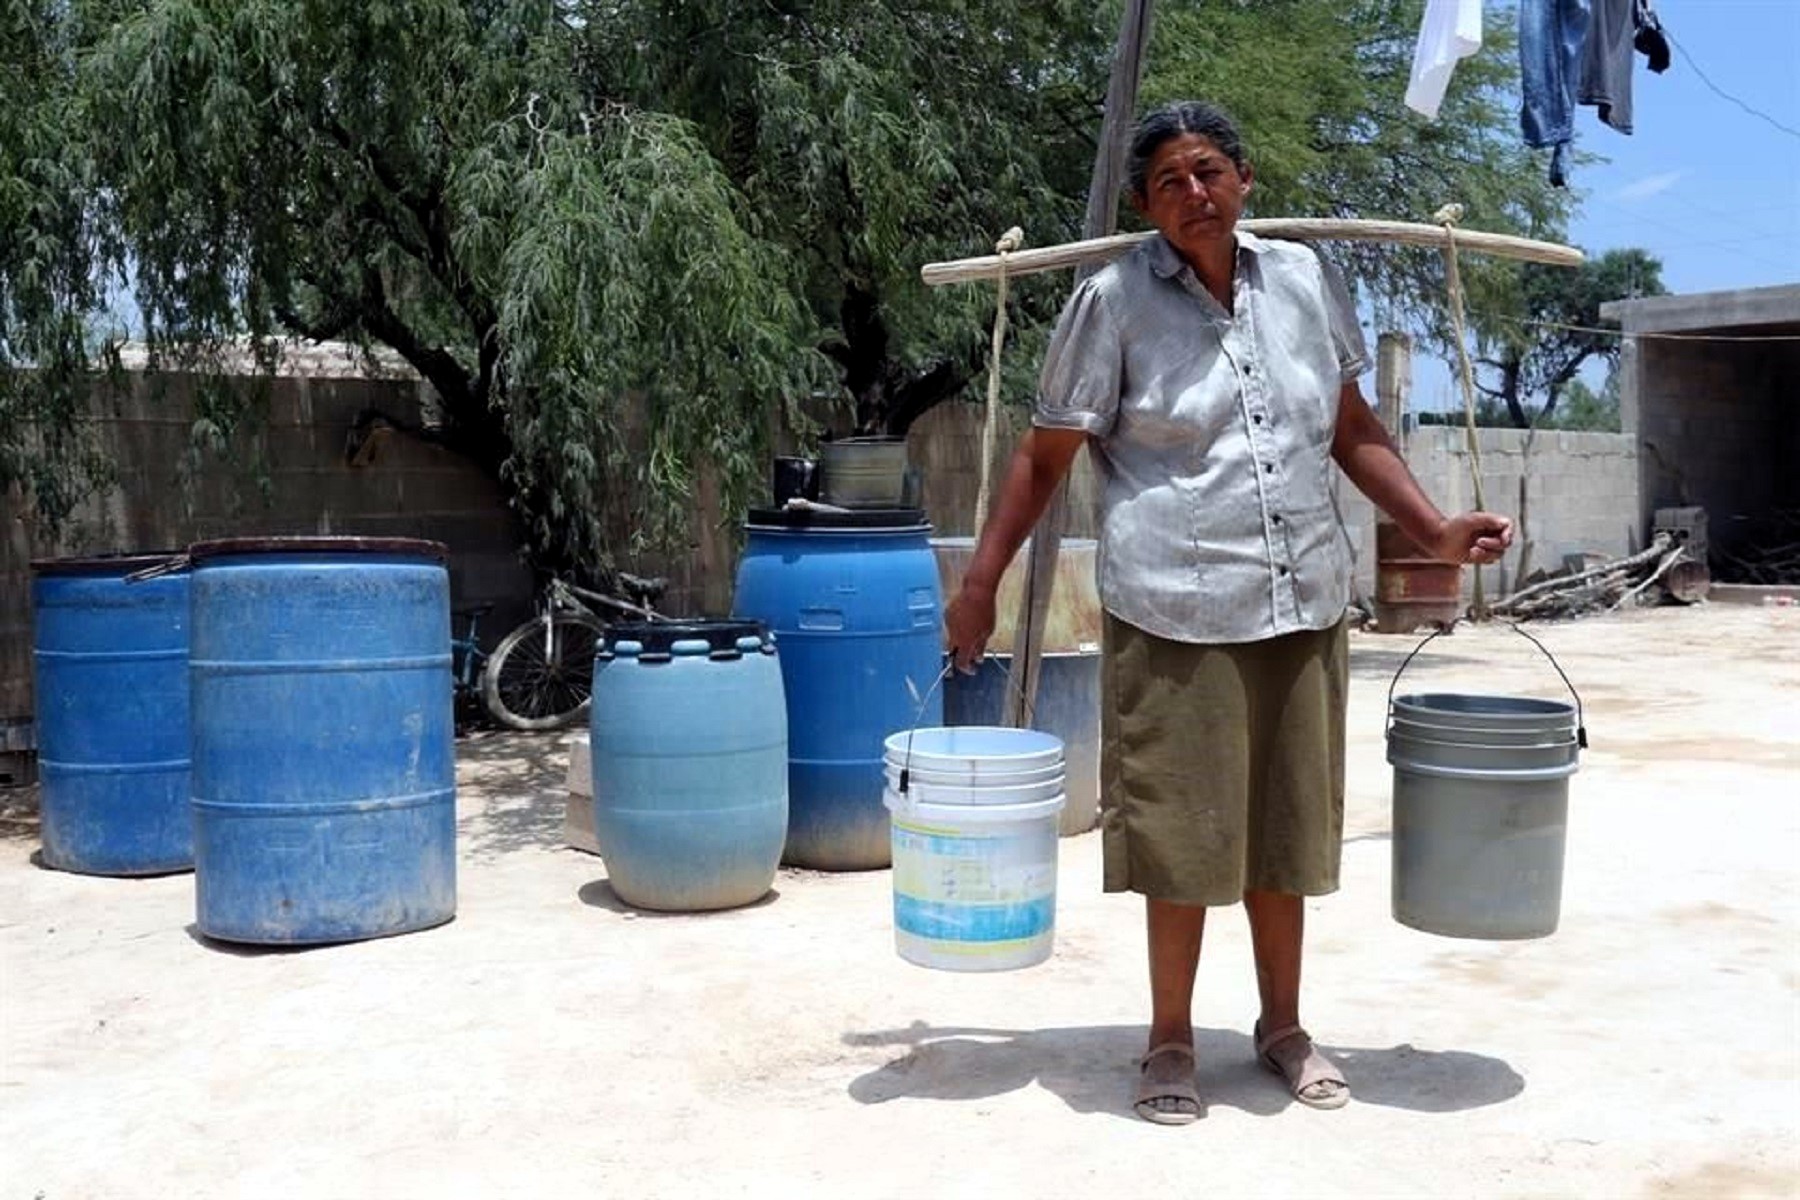 En el Perú, 61% de hogares que no tienen agua potable quienes recogen y llevan este líquido elemento son “Mujeres”.